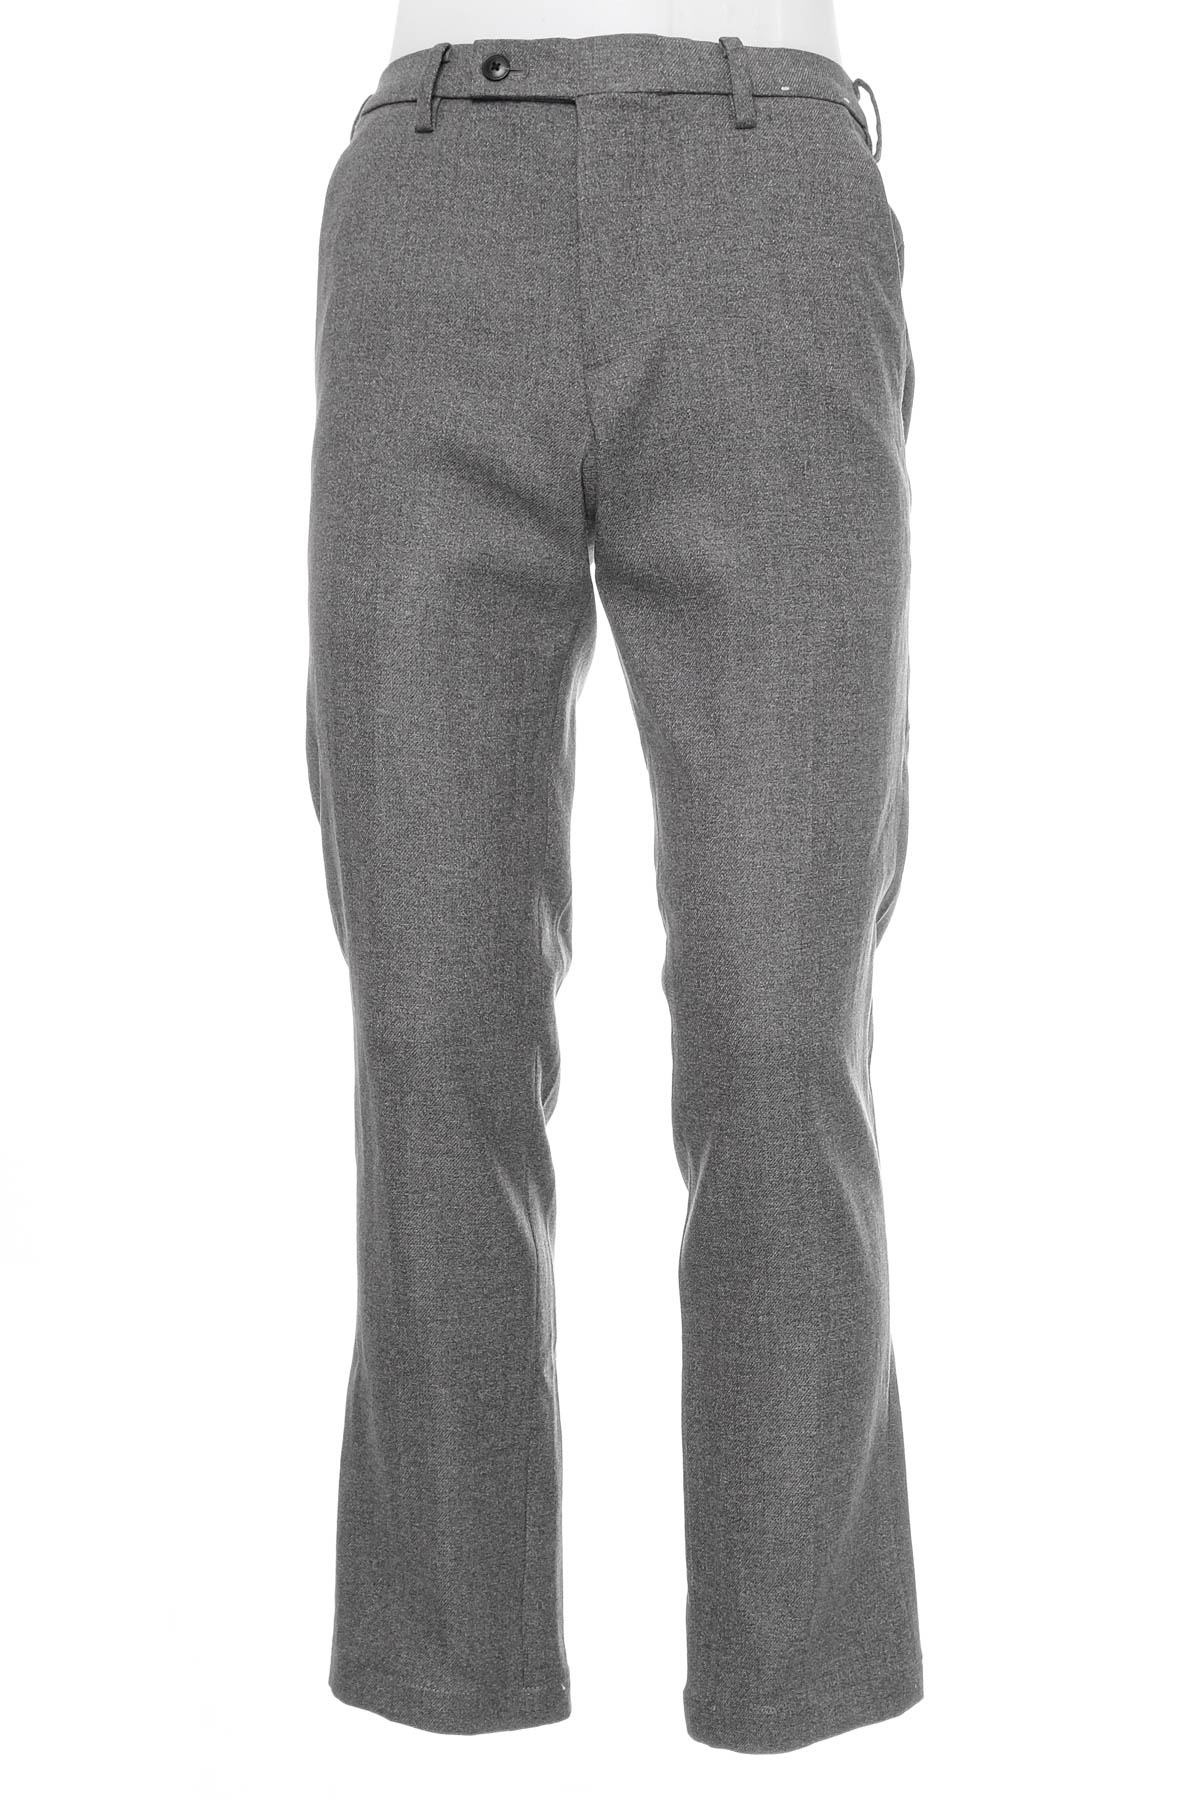 Pantalon pentru bărbați - UNIQLO - 0